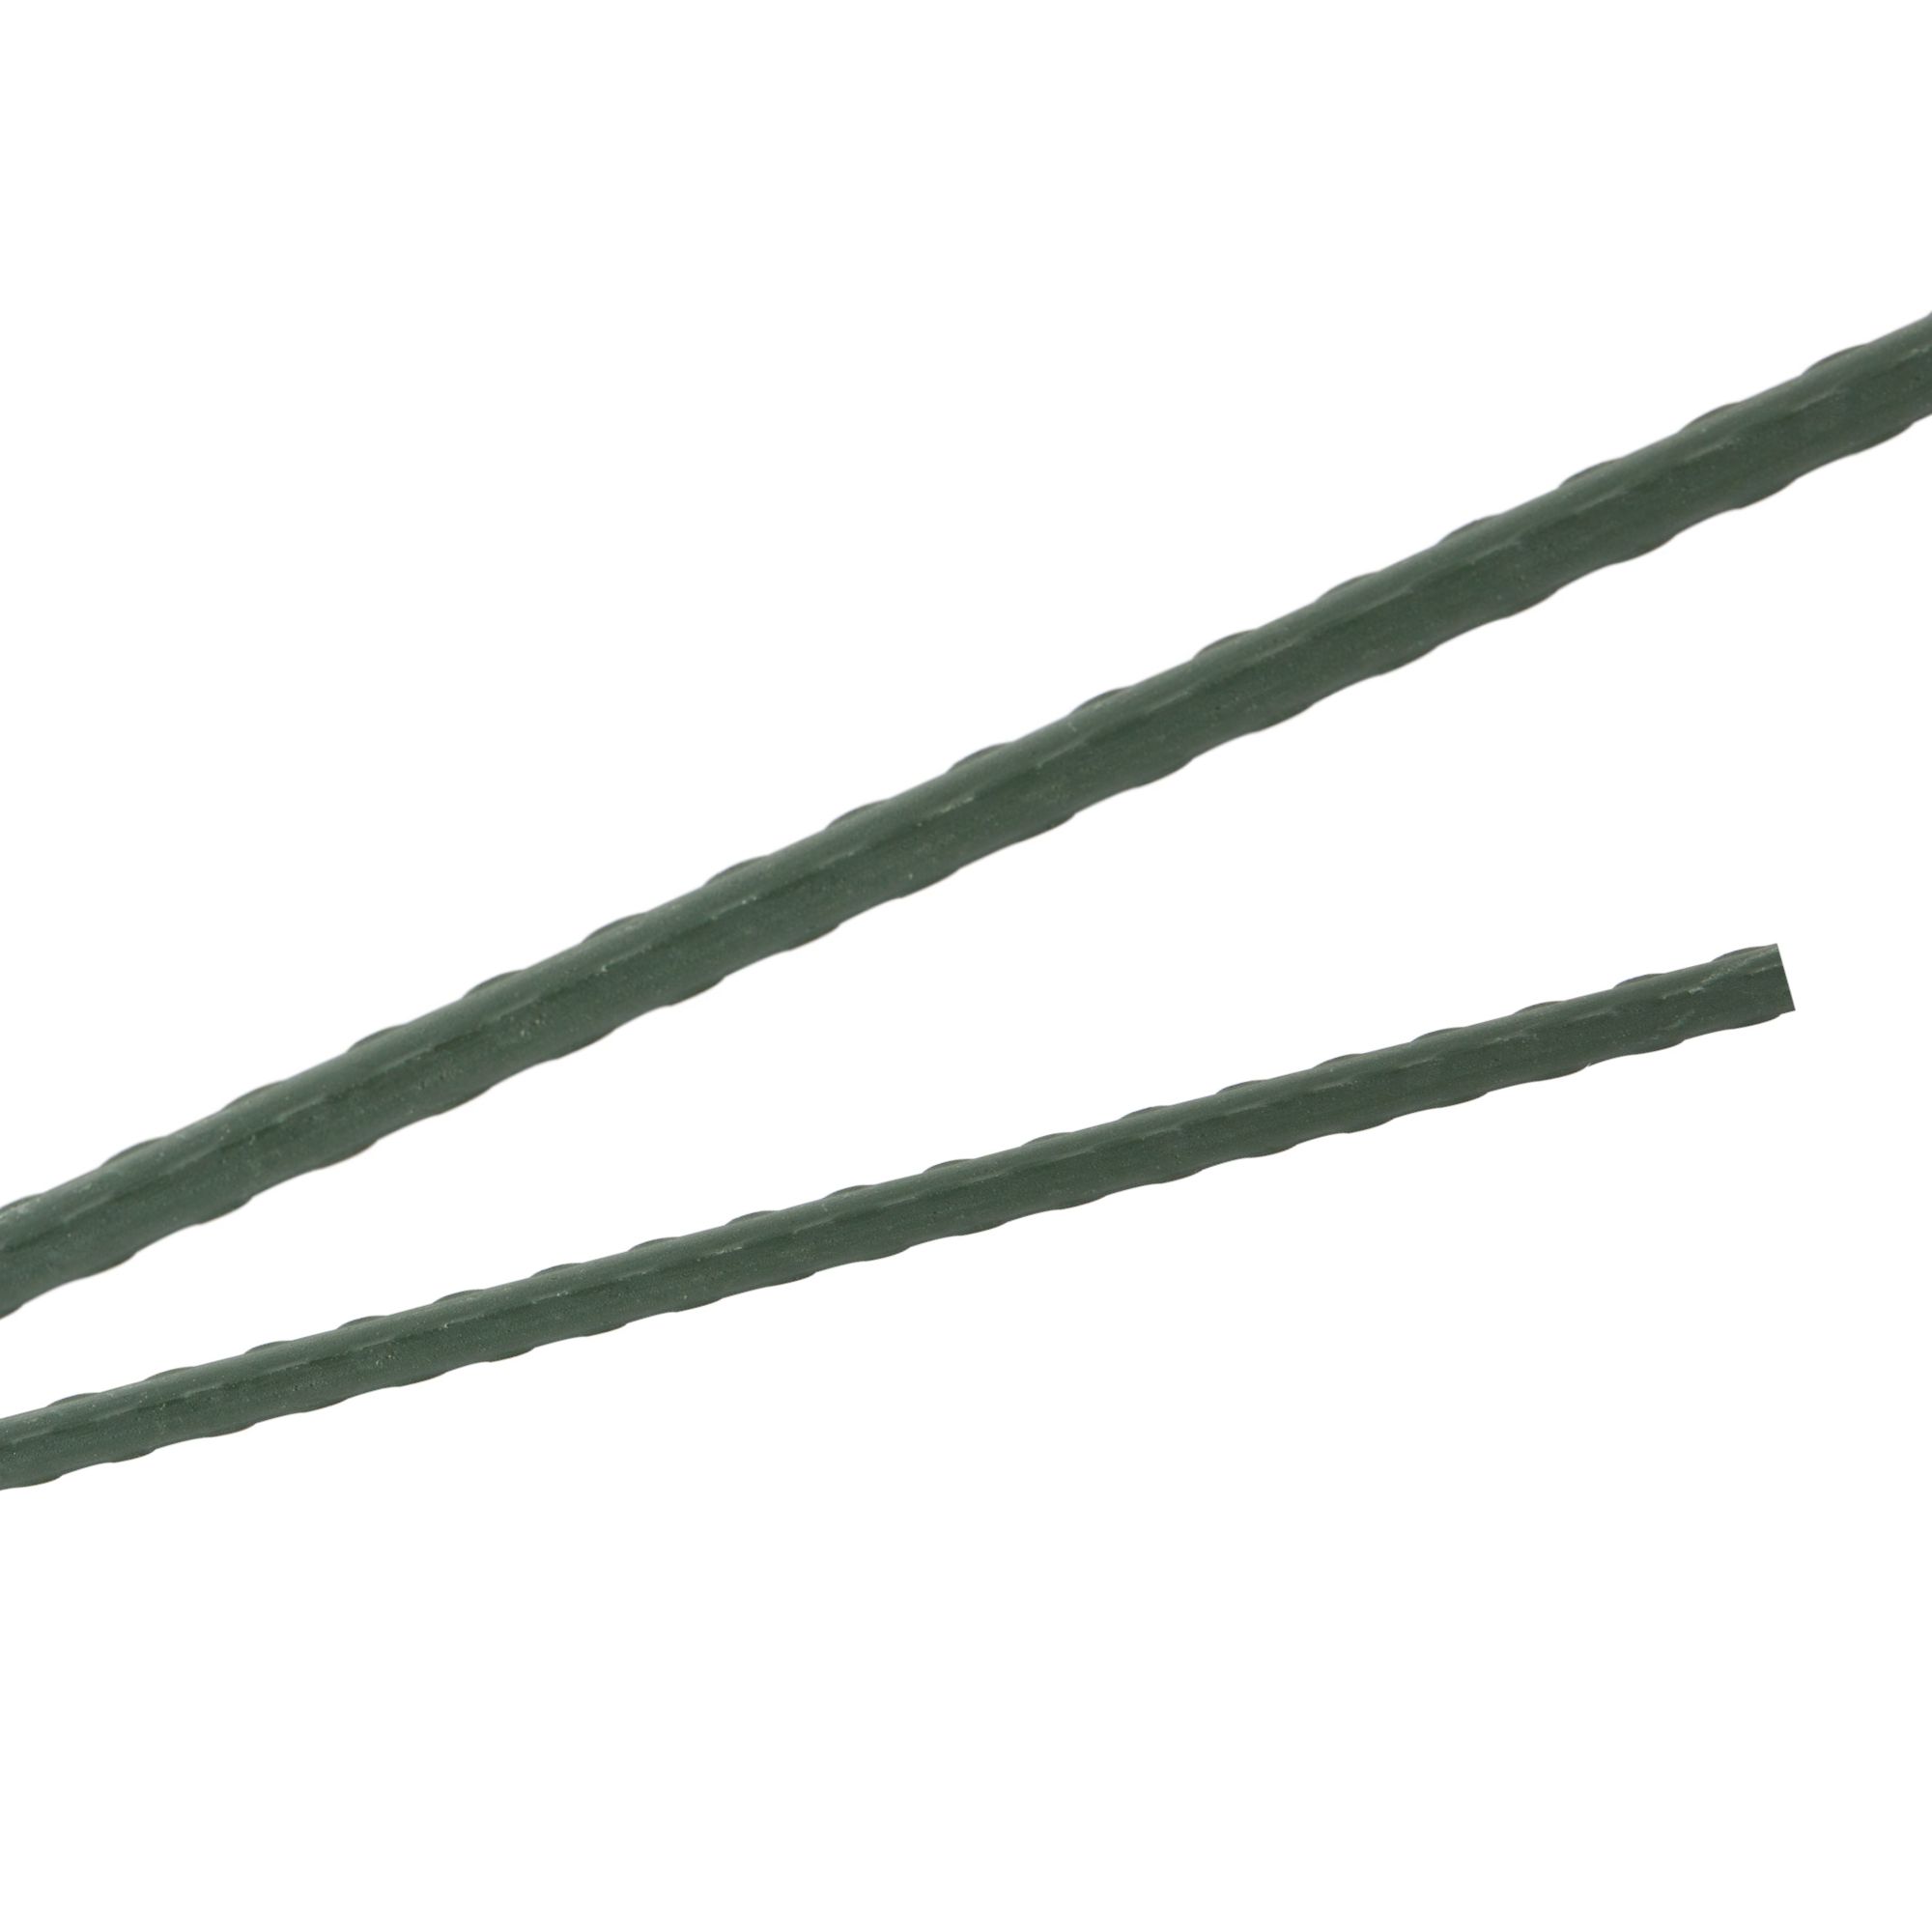 Tyč podpěrná, 8mm, 120cm, kov+PVC, zelená 0.072000 Kg GIGA Sklad20 211787 222